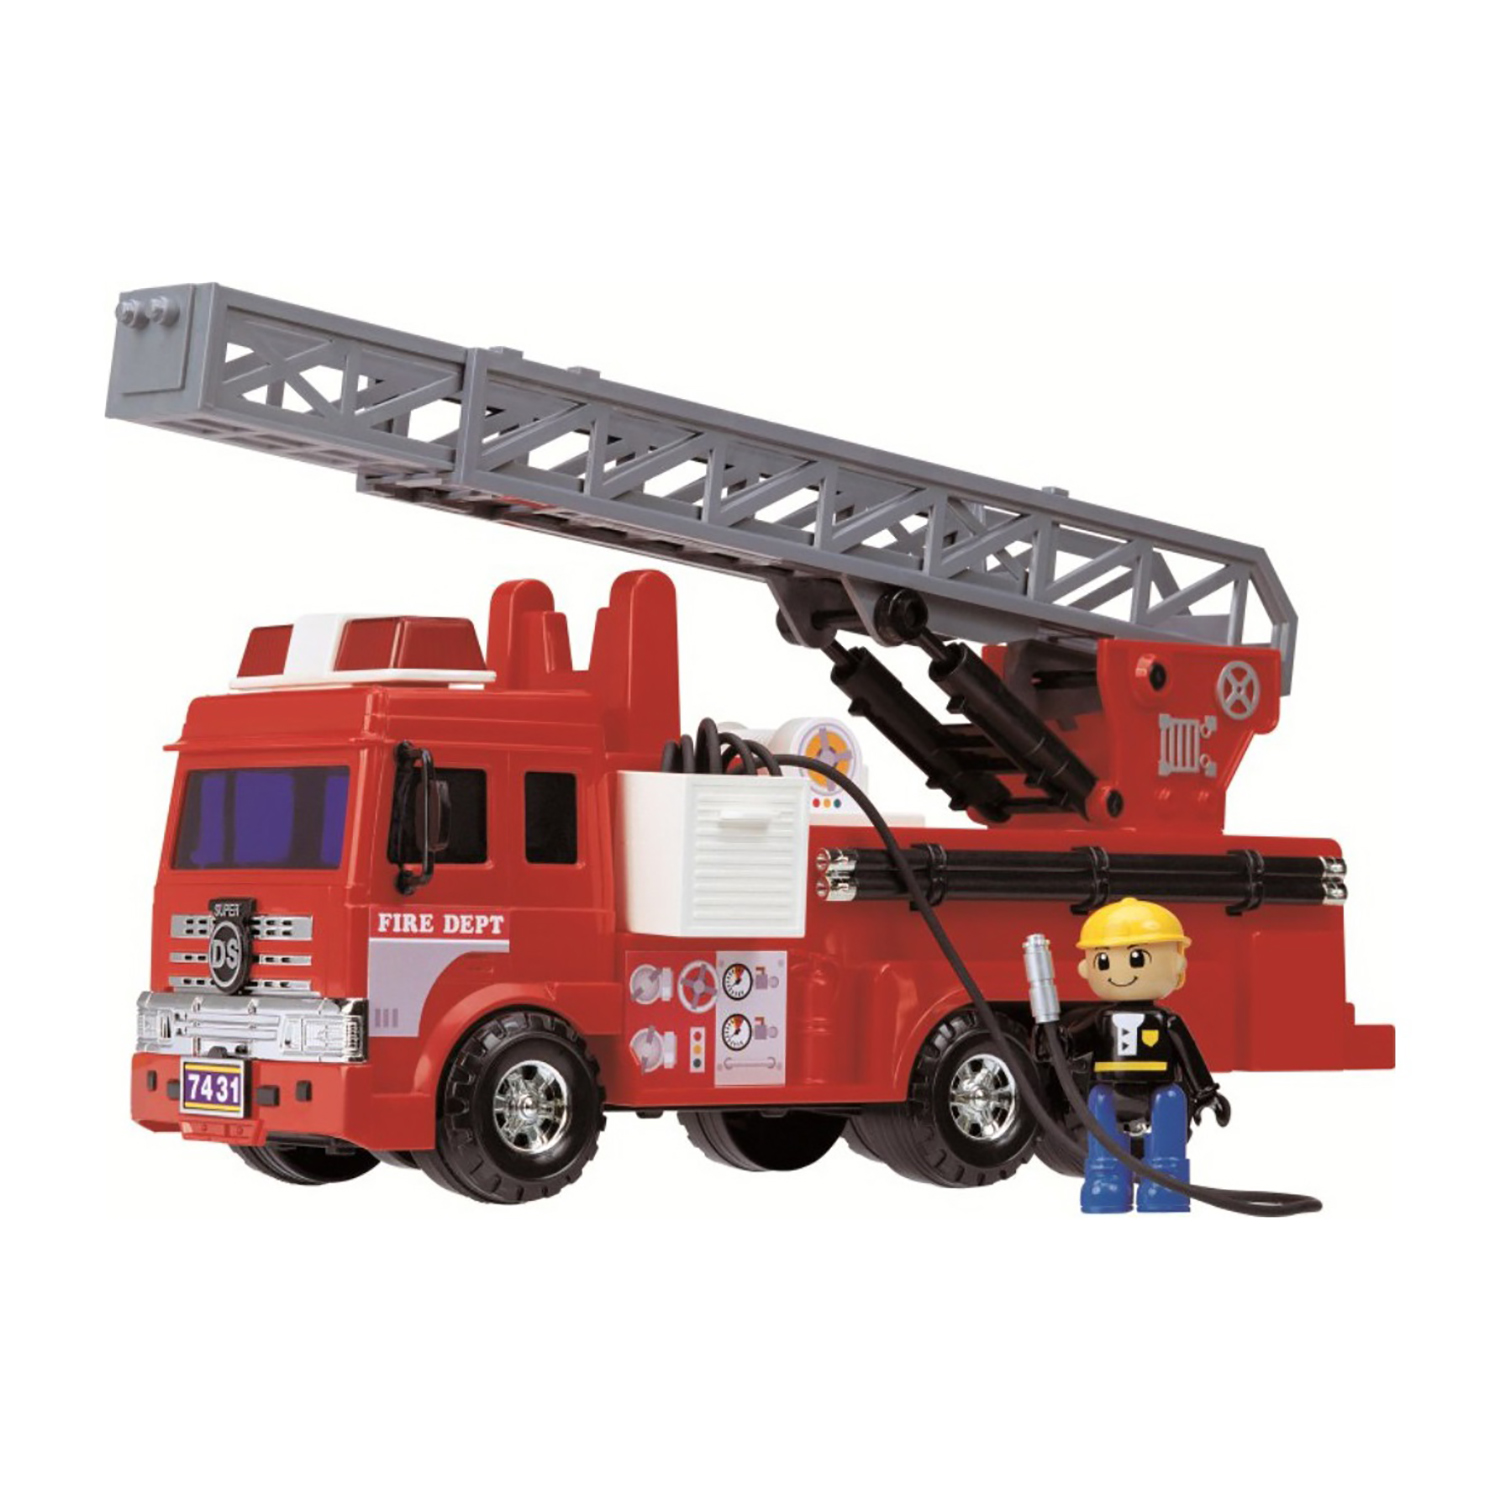 Игровой набор Дасунг Пожарная машина со шлангом и фигуркой, 40377 игровой набор daesung пожарная машина с фигуркой